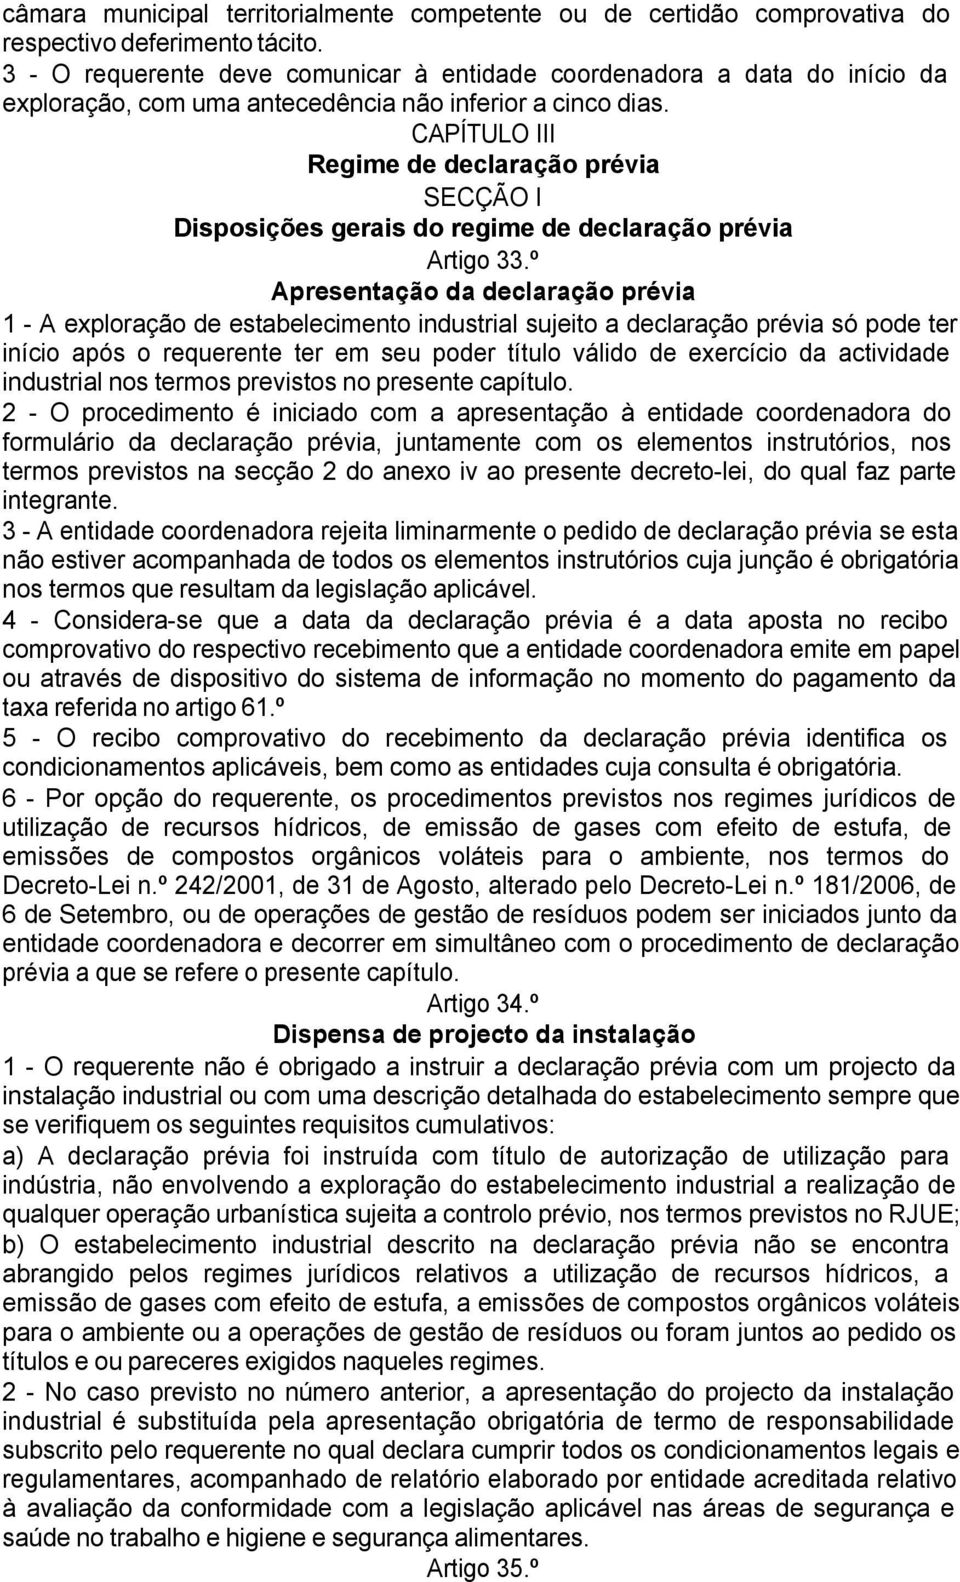 CAPÍTULO III Regime de declaração prévia SECÇÃO I Disposições gerais do regime de declaração prévia Artigo 33.